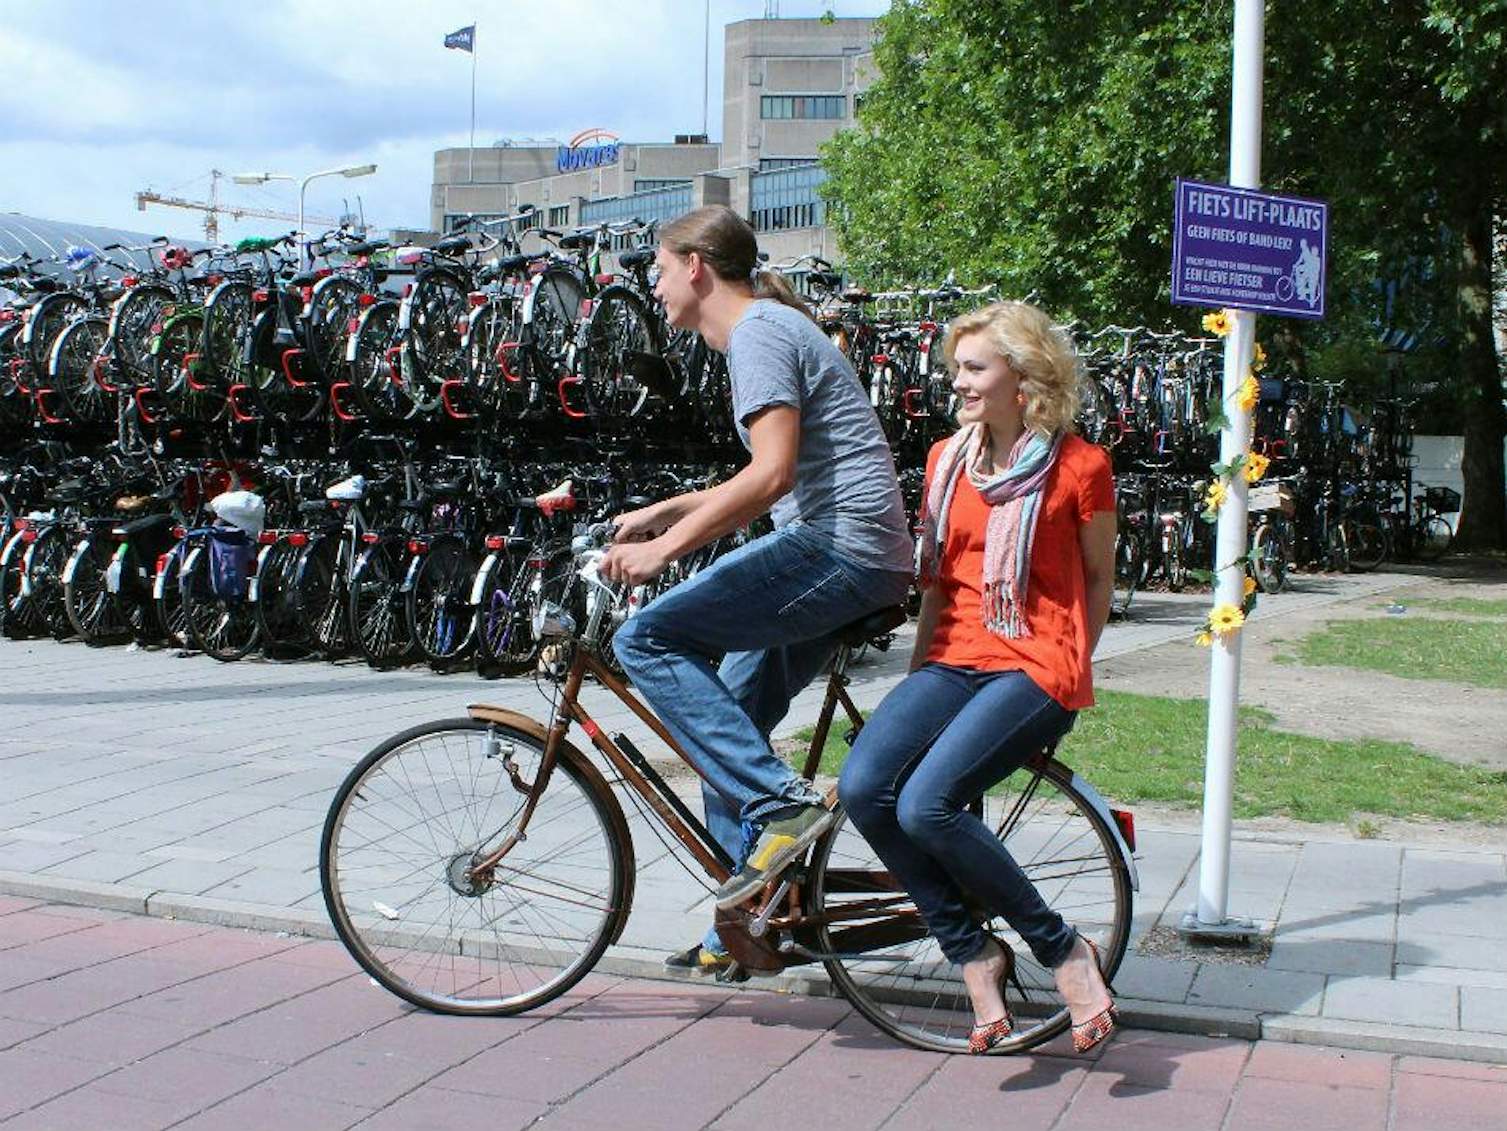 Fietsliftborden in Utrecht: spring maar achterop mij! | De Utrechtse Internet Courant